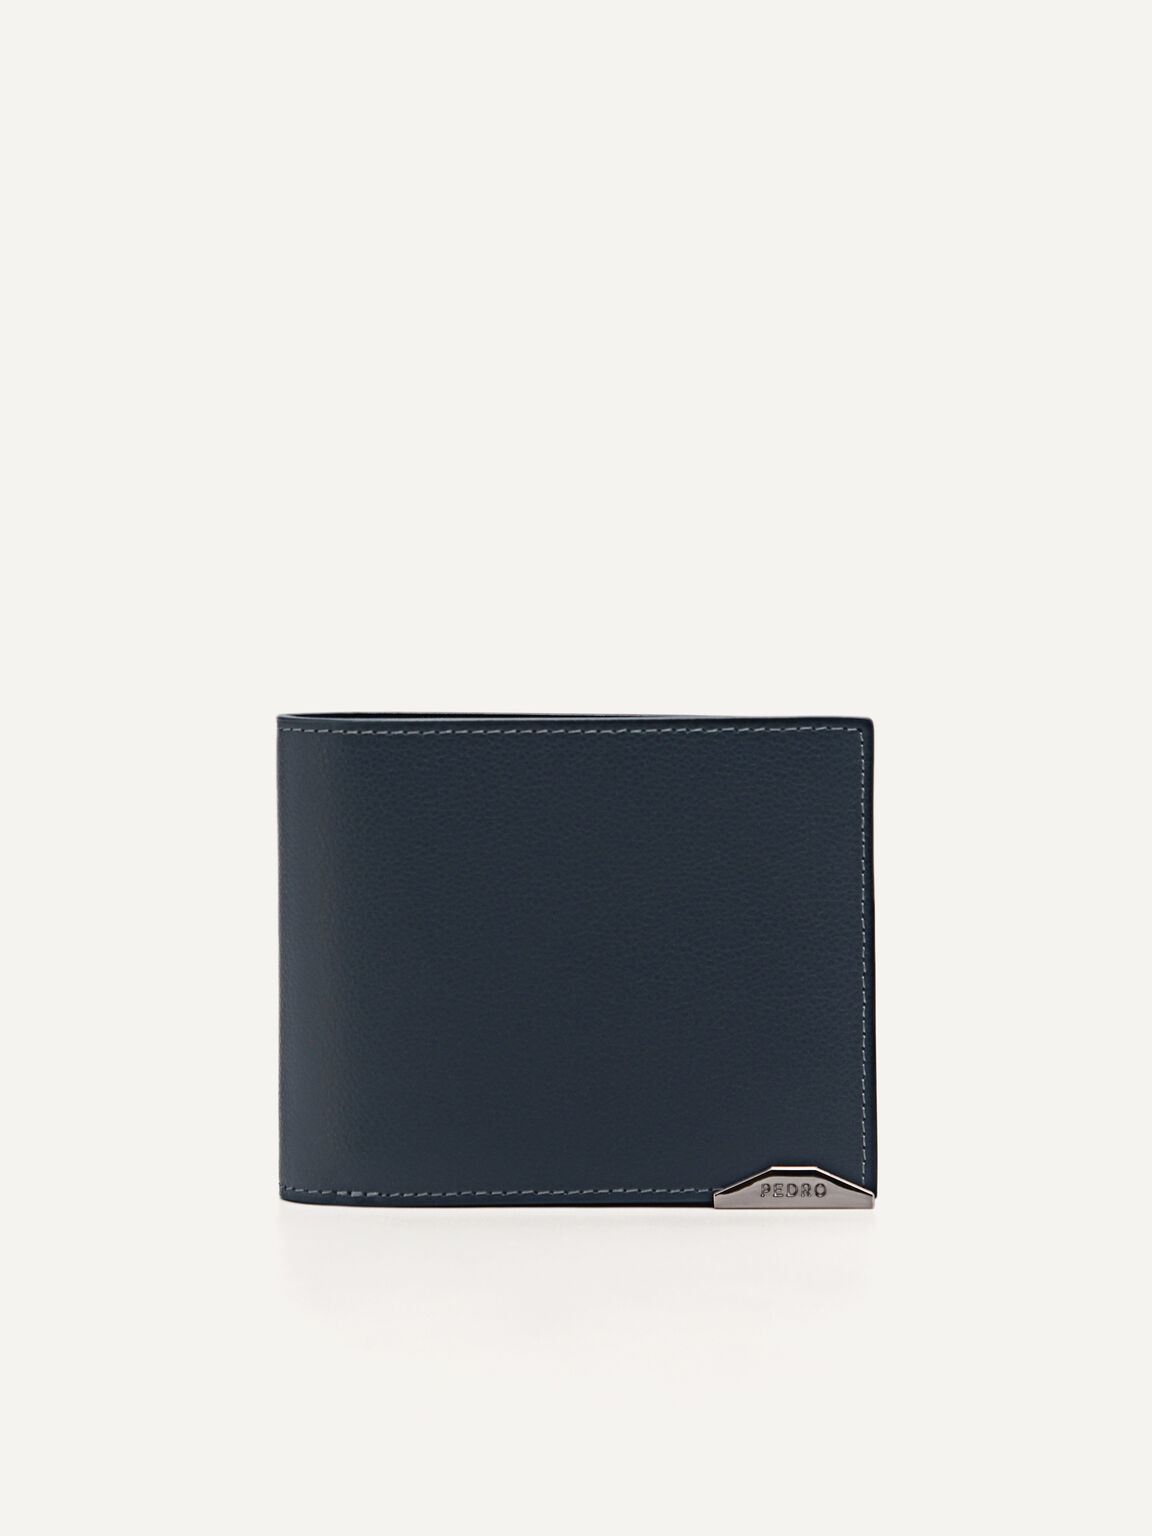 Leather Bi-Fold Wallet, Navy